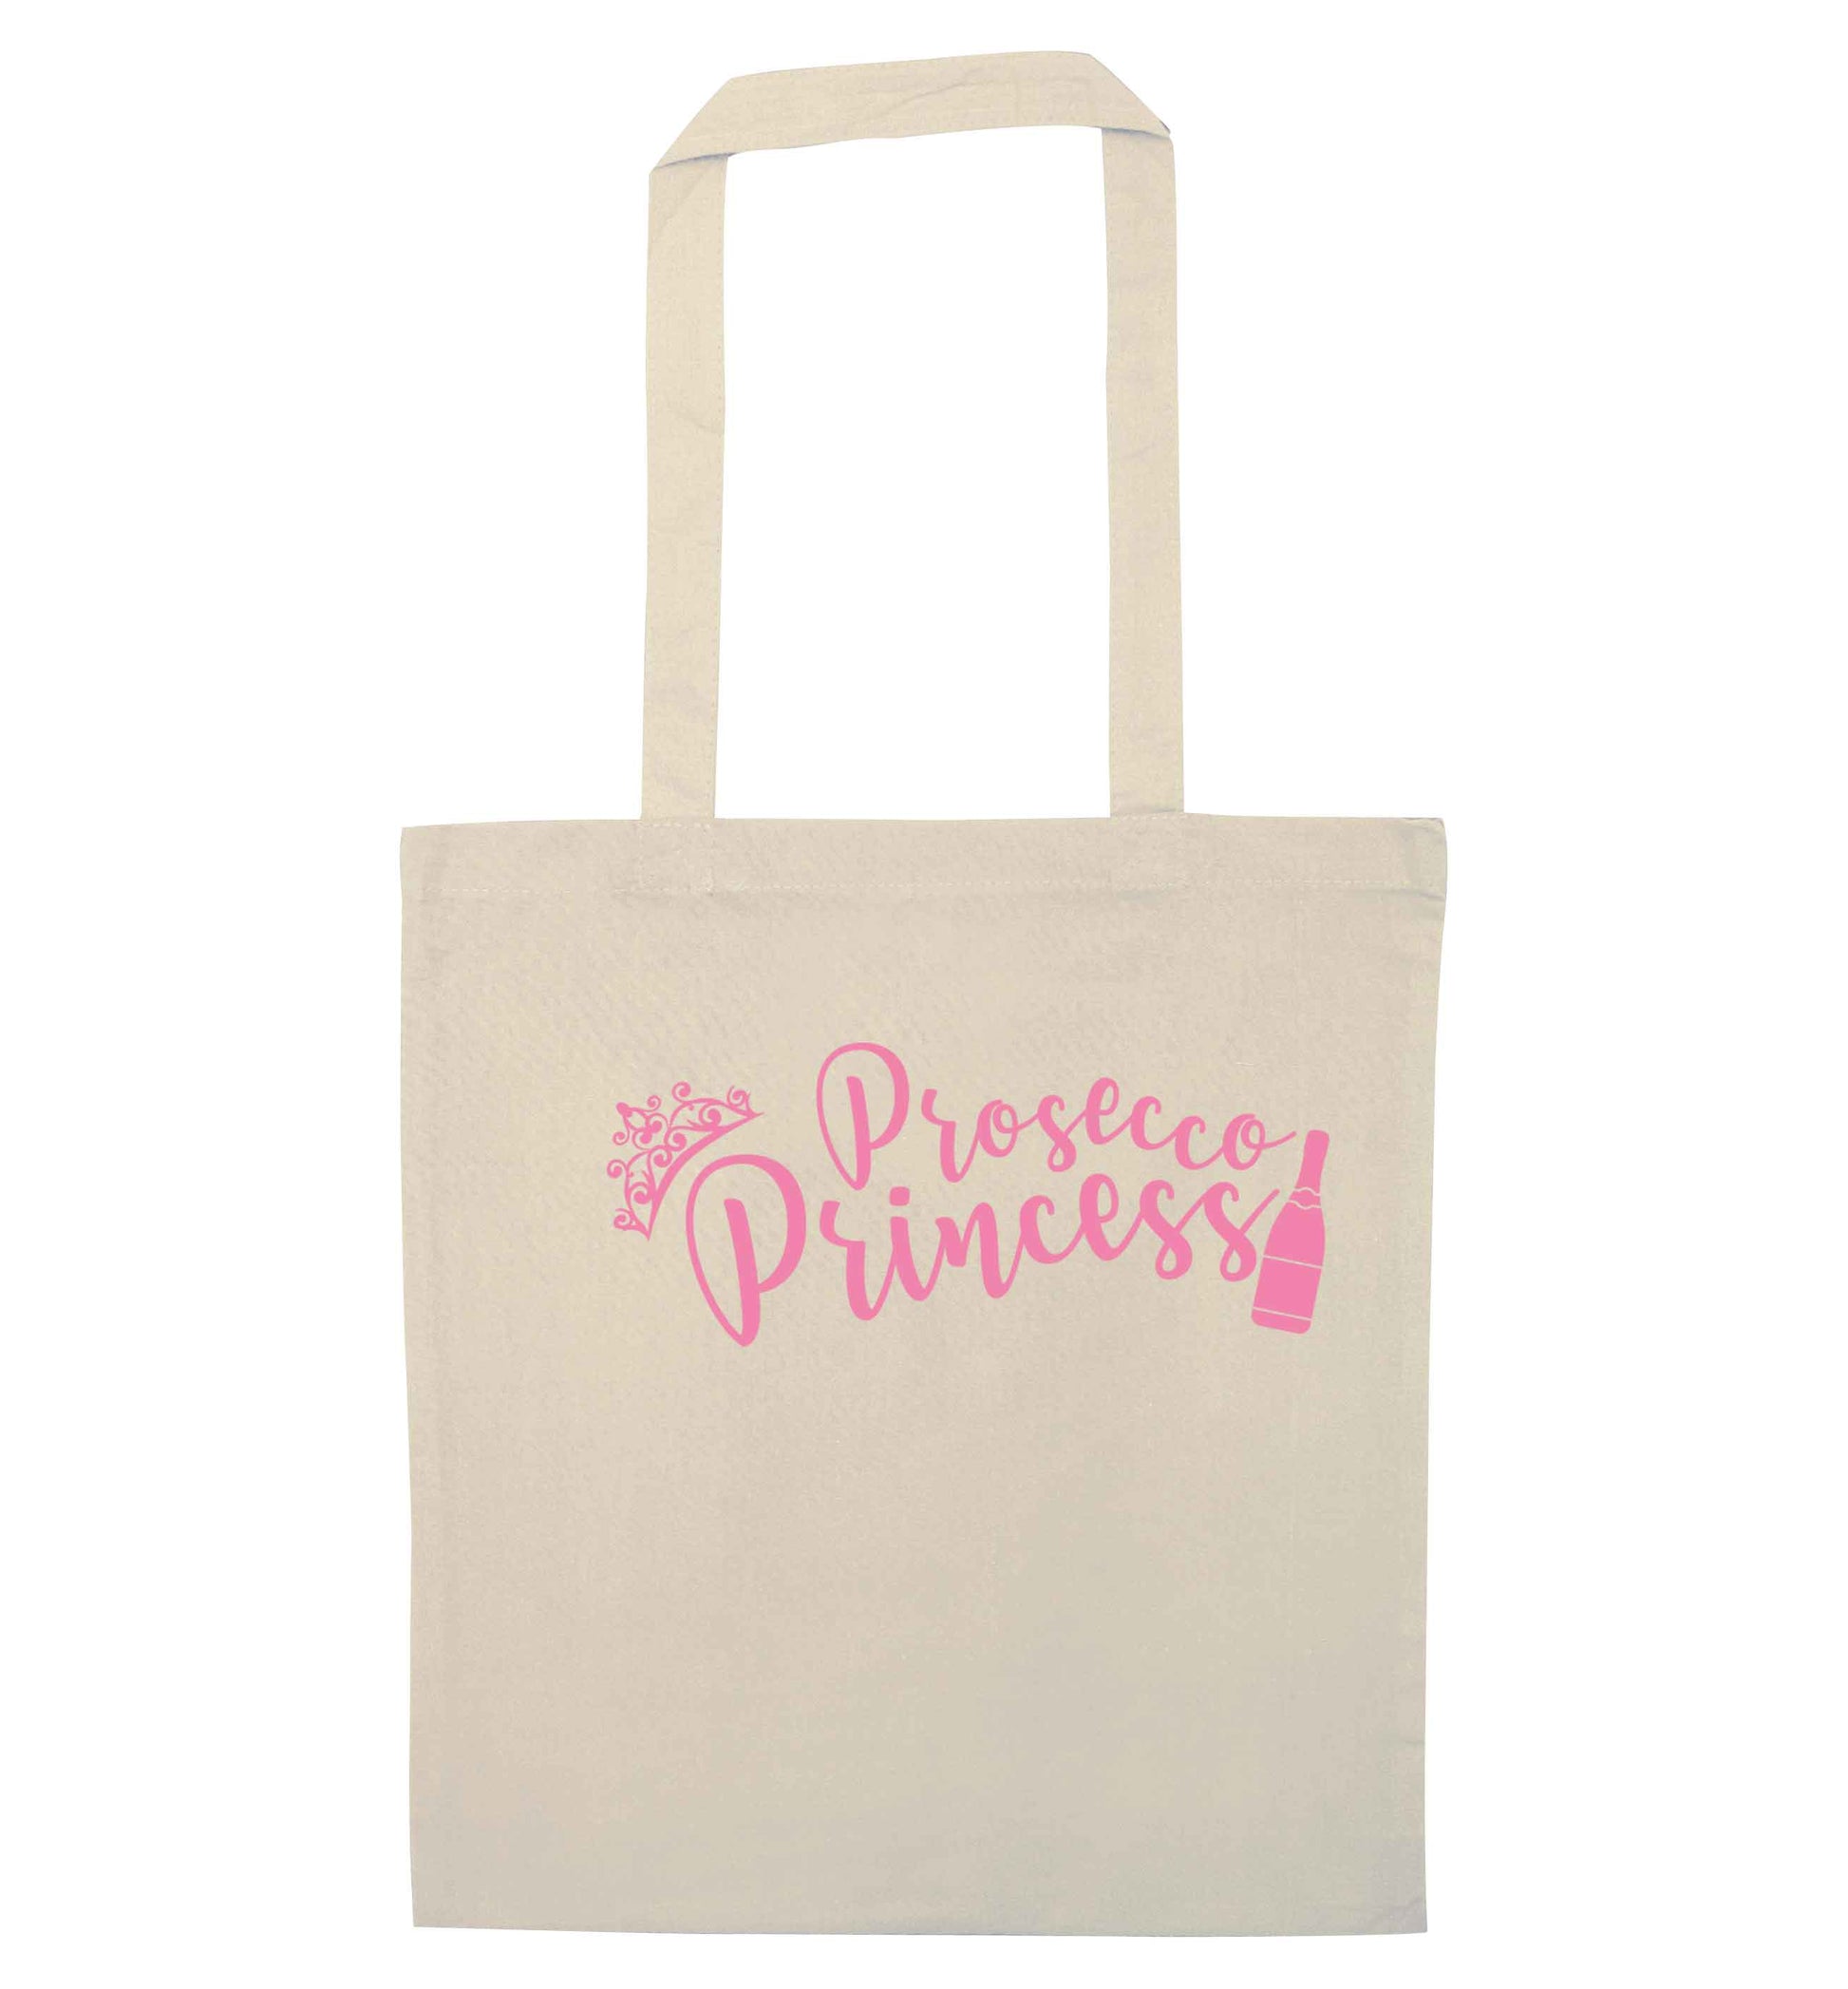 Prosecco princess natural tote bag